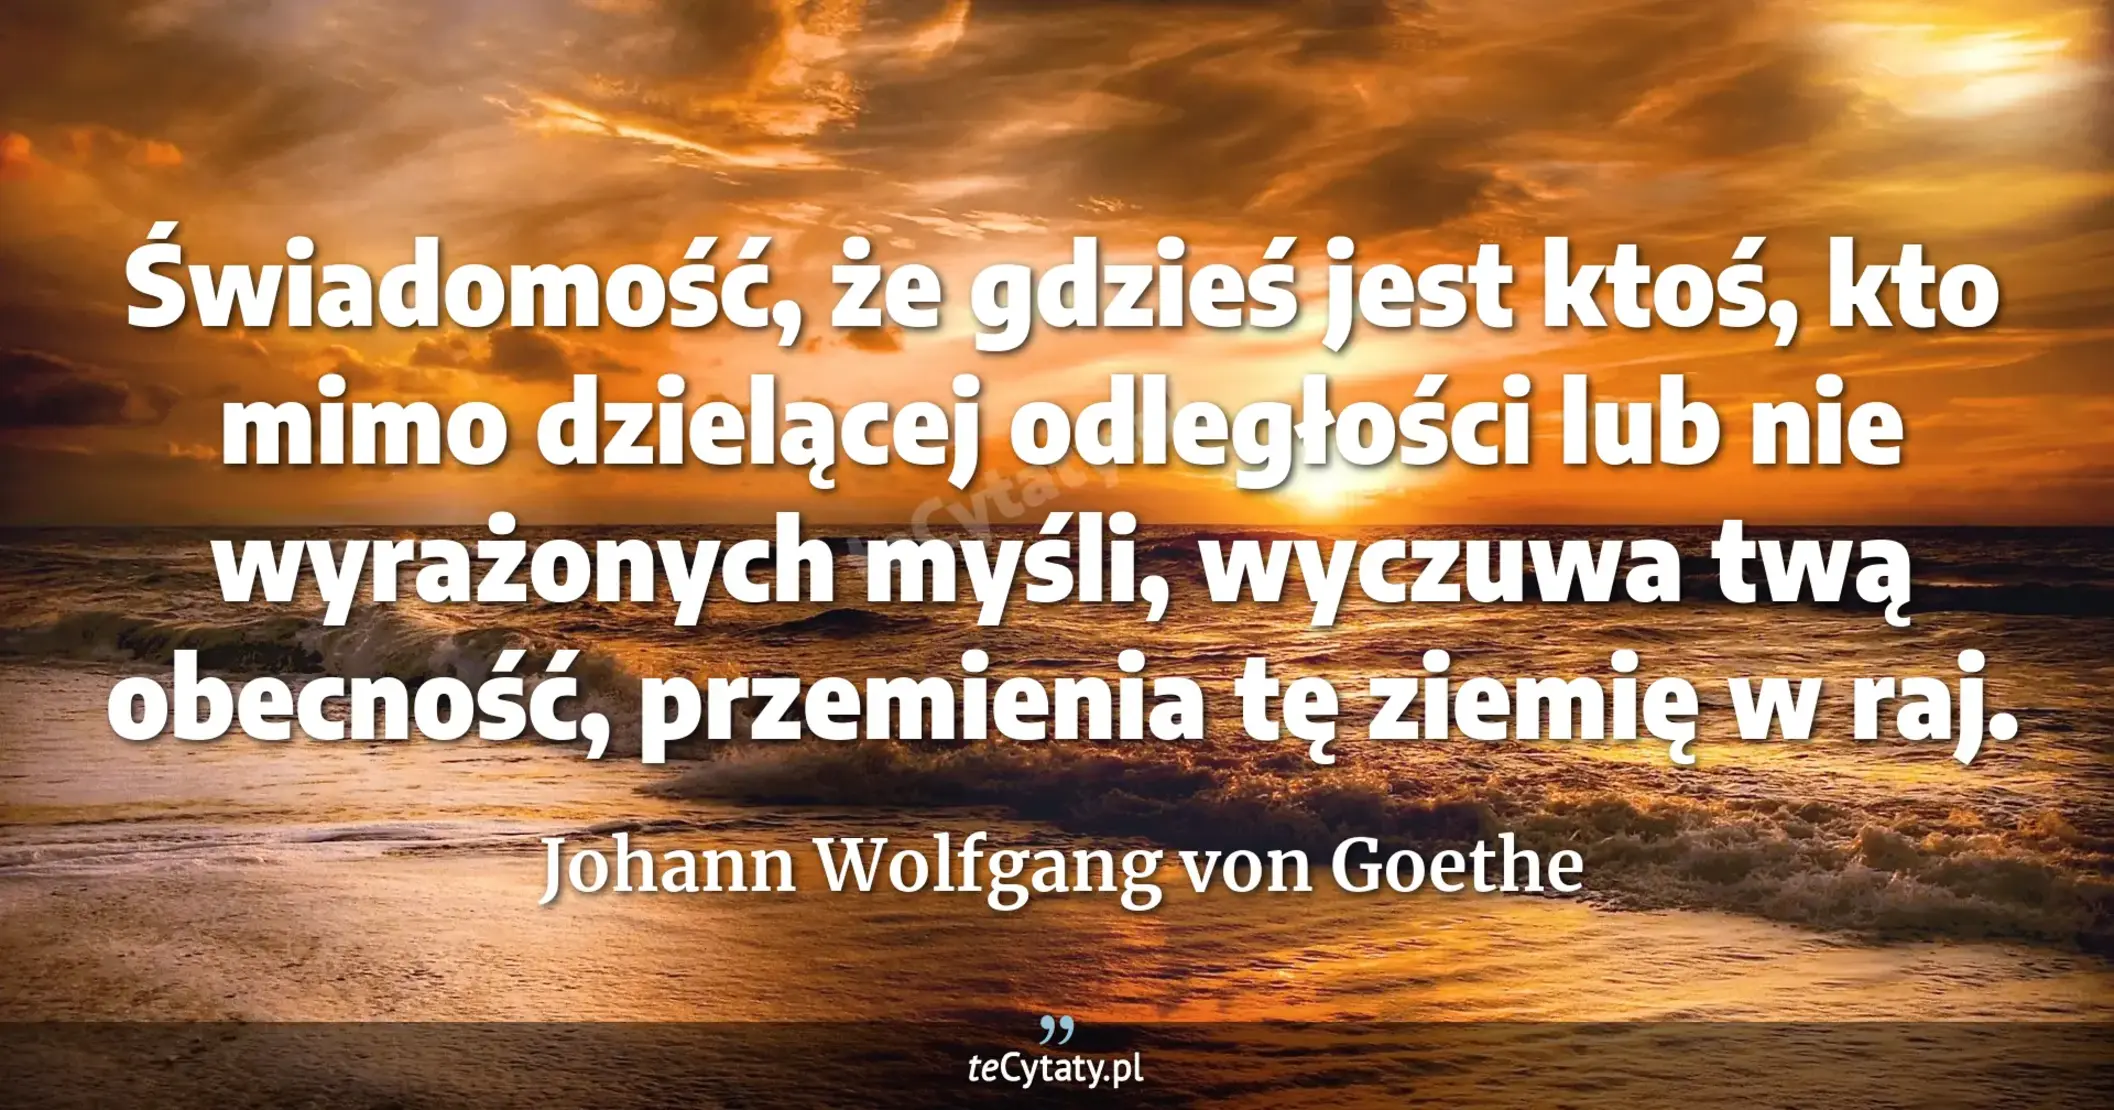 Świadomość, że gdzieś jest ktoś, kto mimo dzielącej odległości lub nie wyrażonych myśli, wyczuwa twą obecność, przemienia tę ziemię w raj. - Johann Wolfgang von Goethe